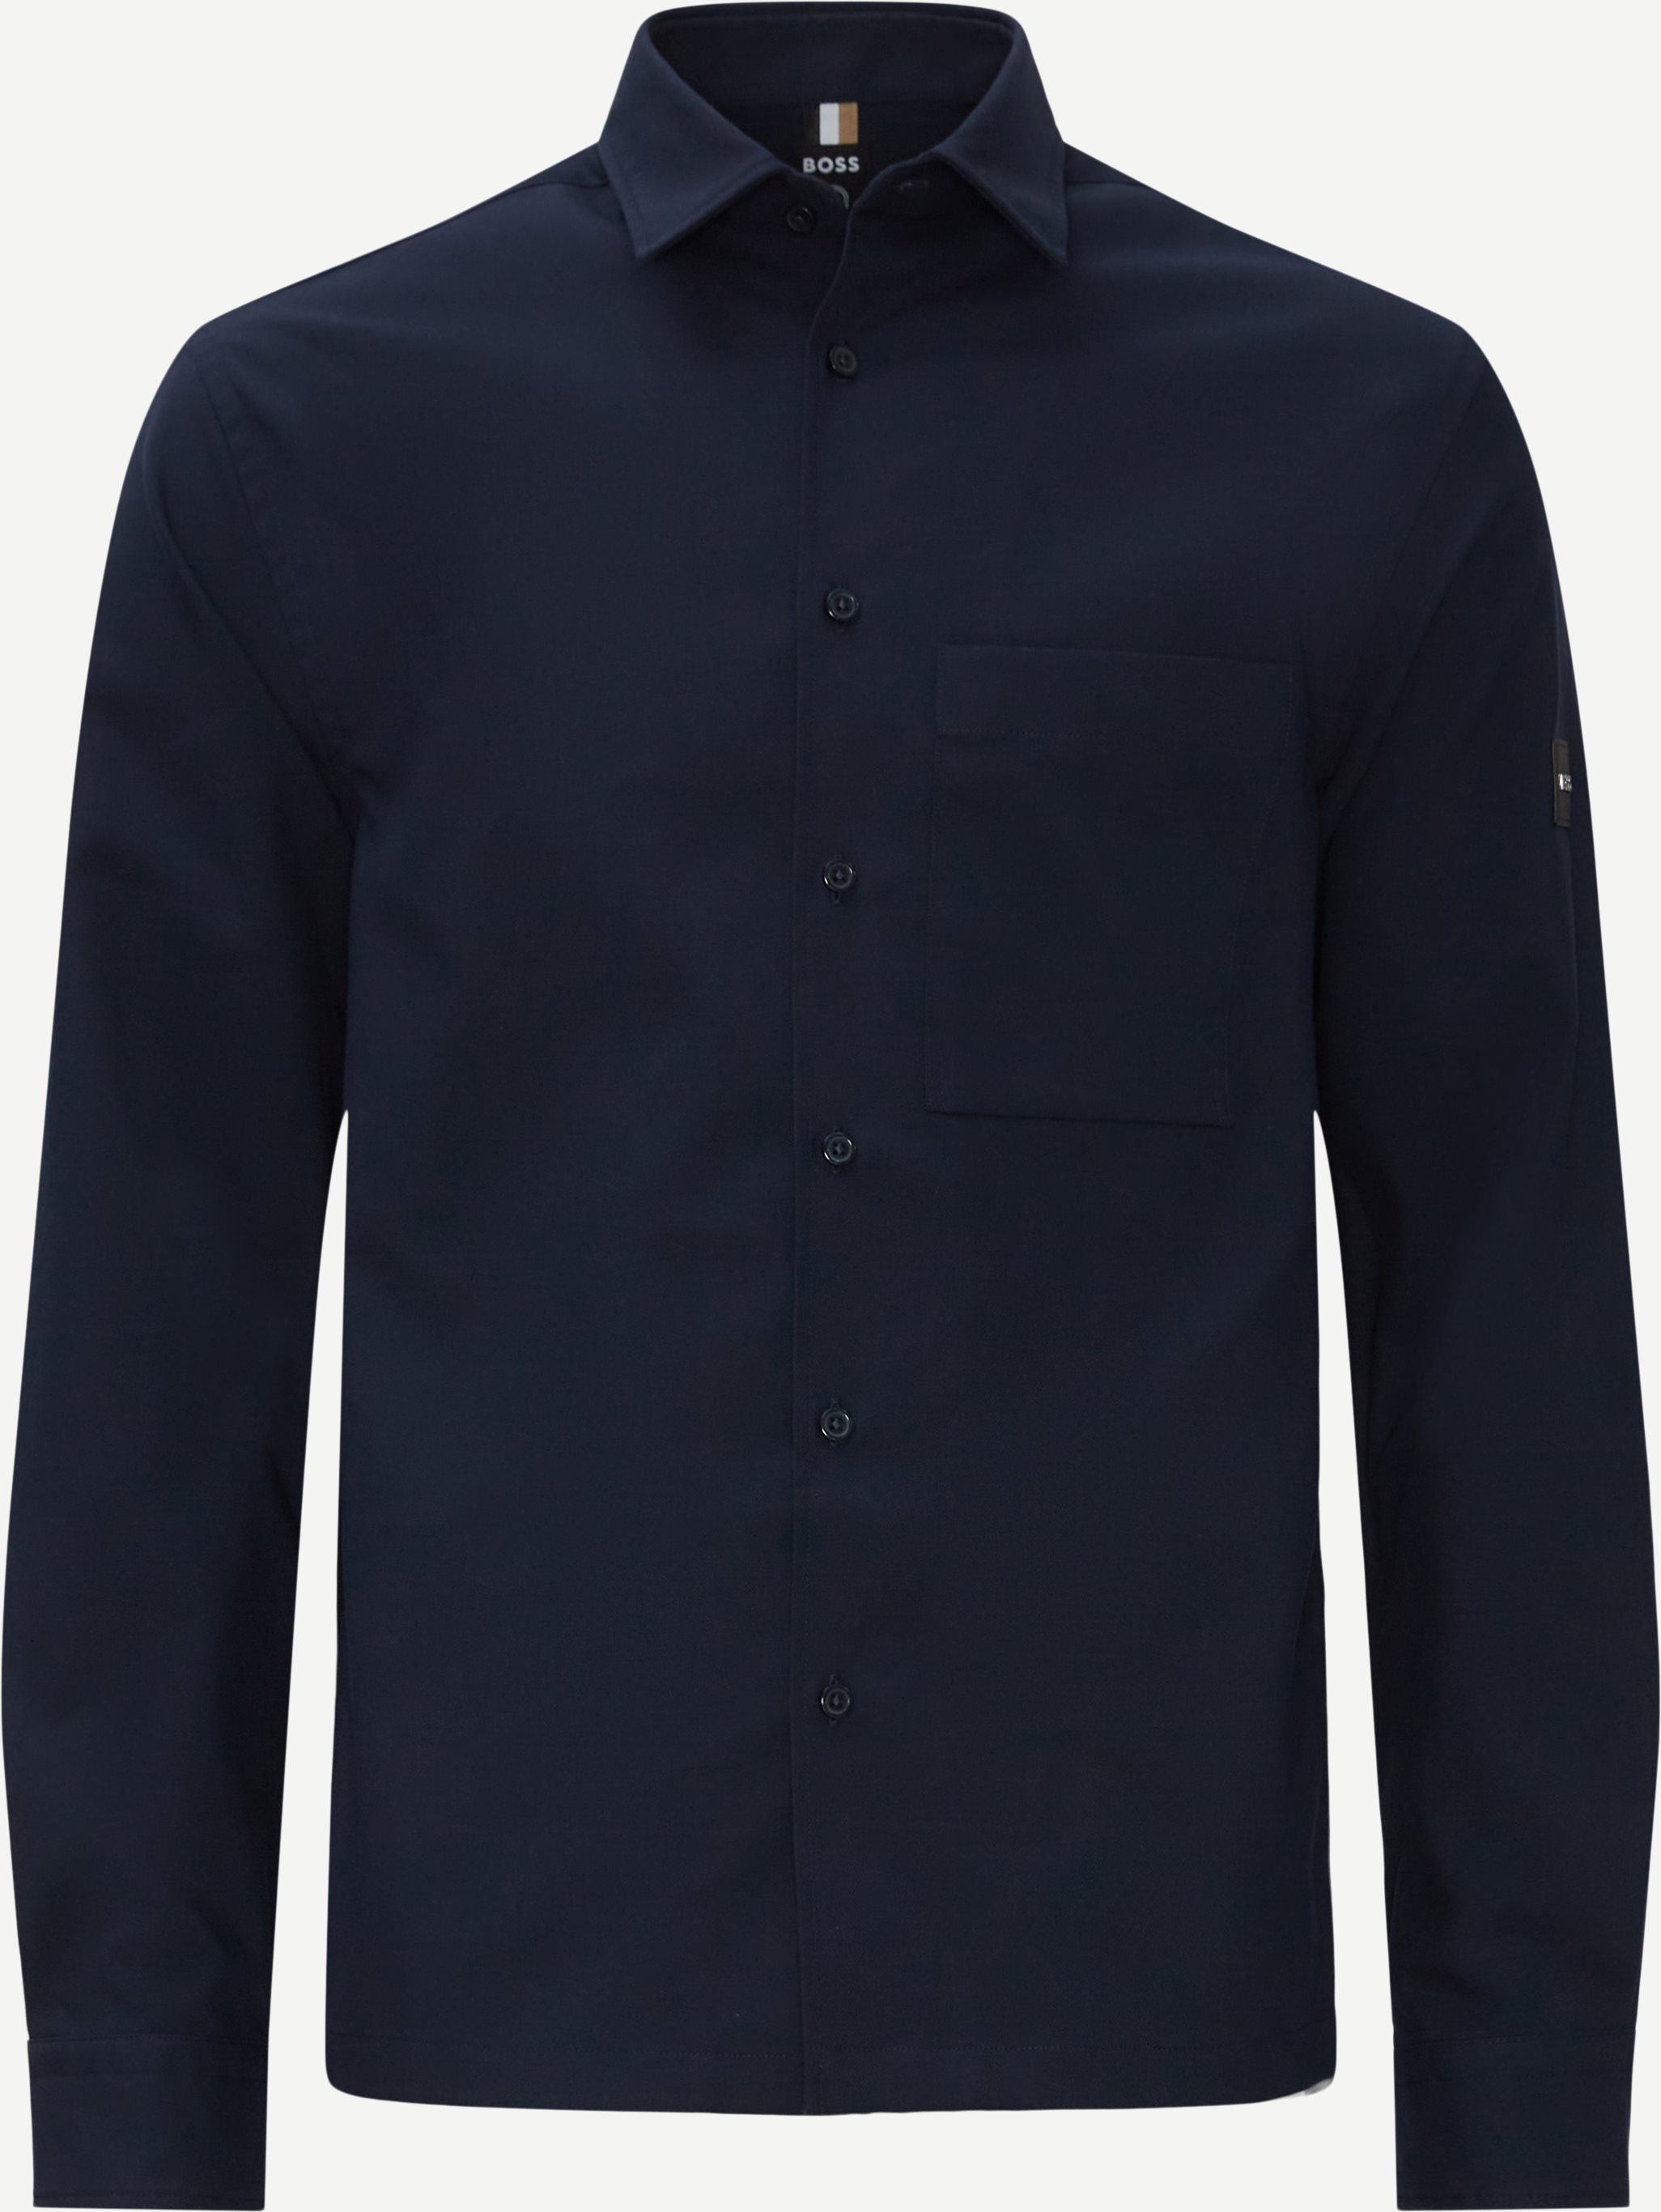 Newt-P Overshirt - Skjorter - Relaxed fit - Blå